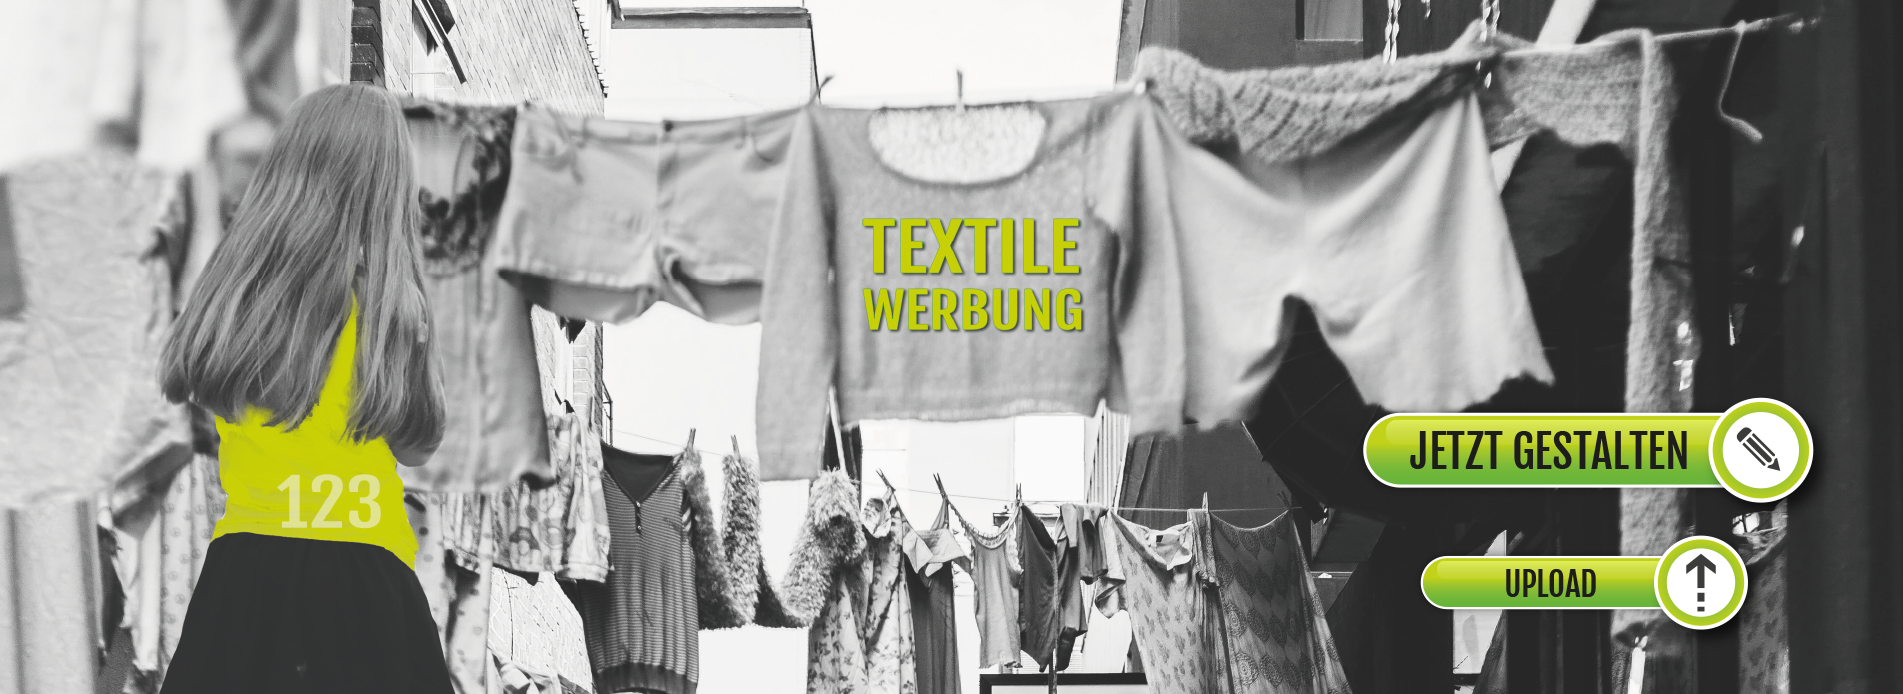 Bekleidung | Textildruck | Textilien | Bekleidung bedrucken lassen